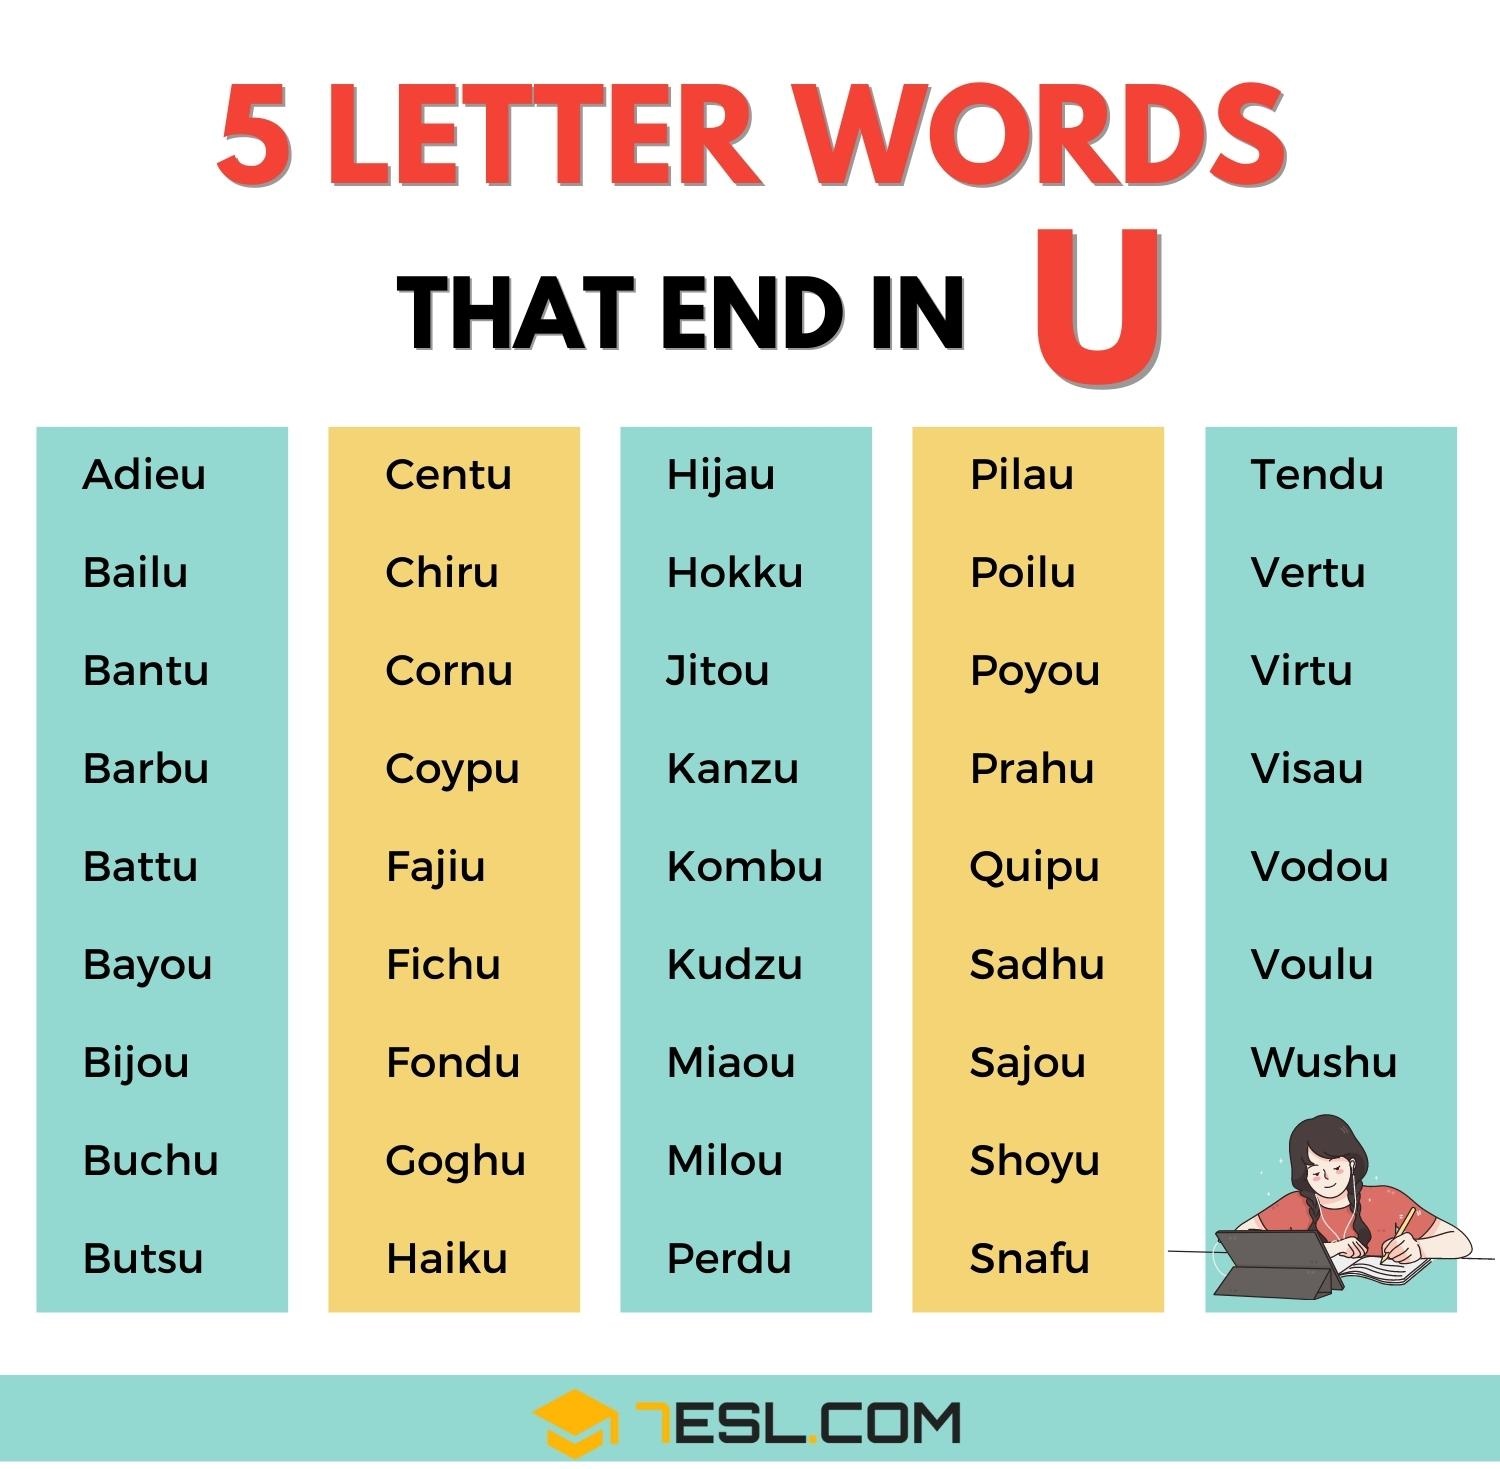 5 letter words ending in uer